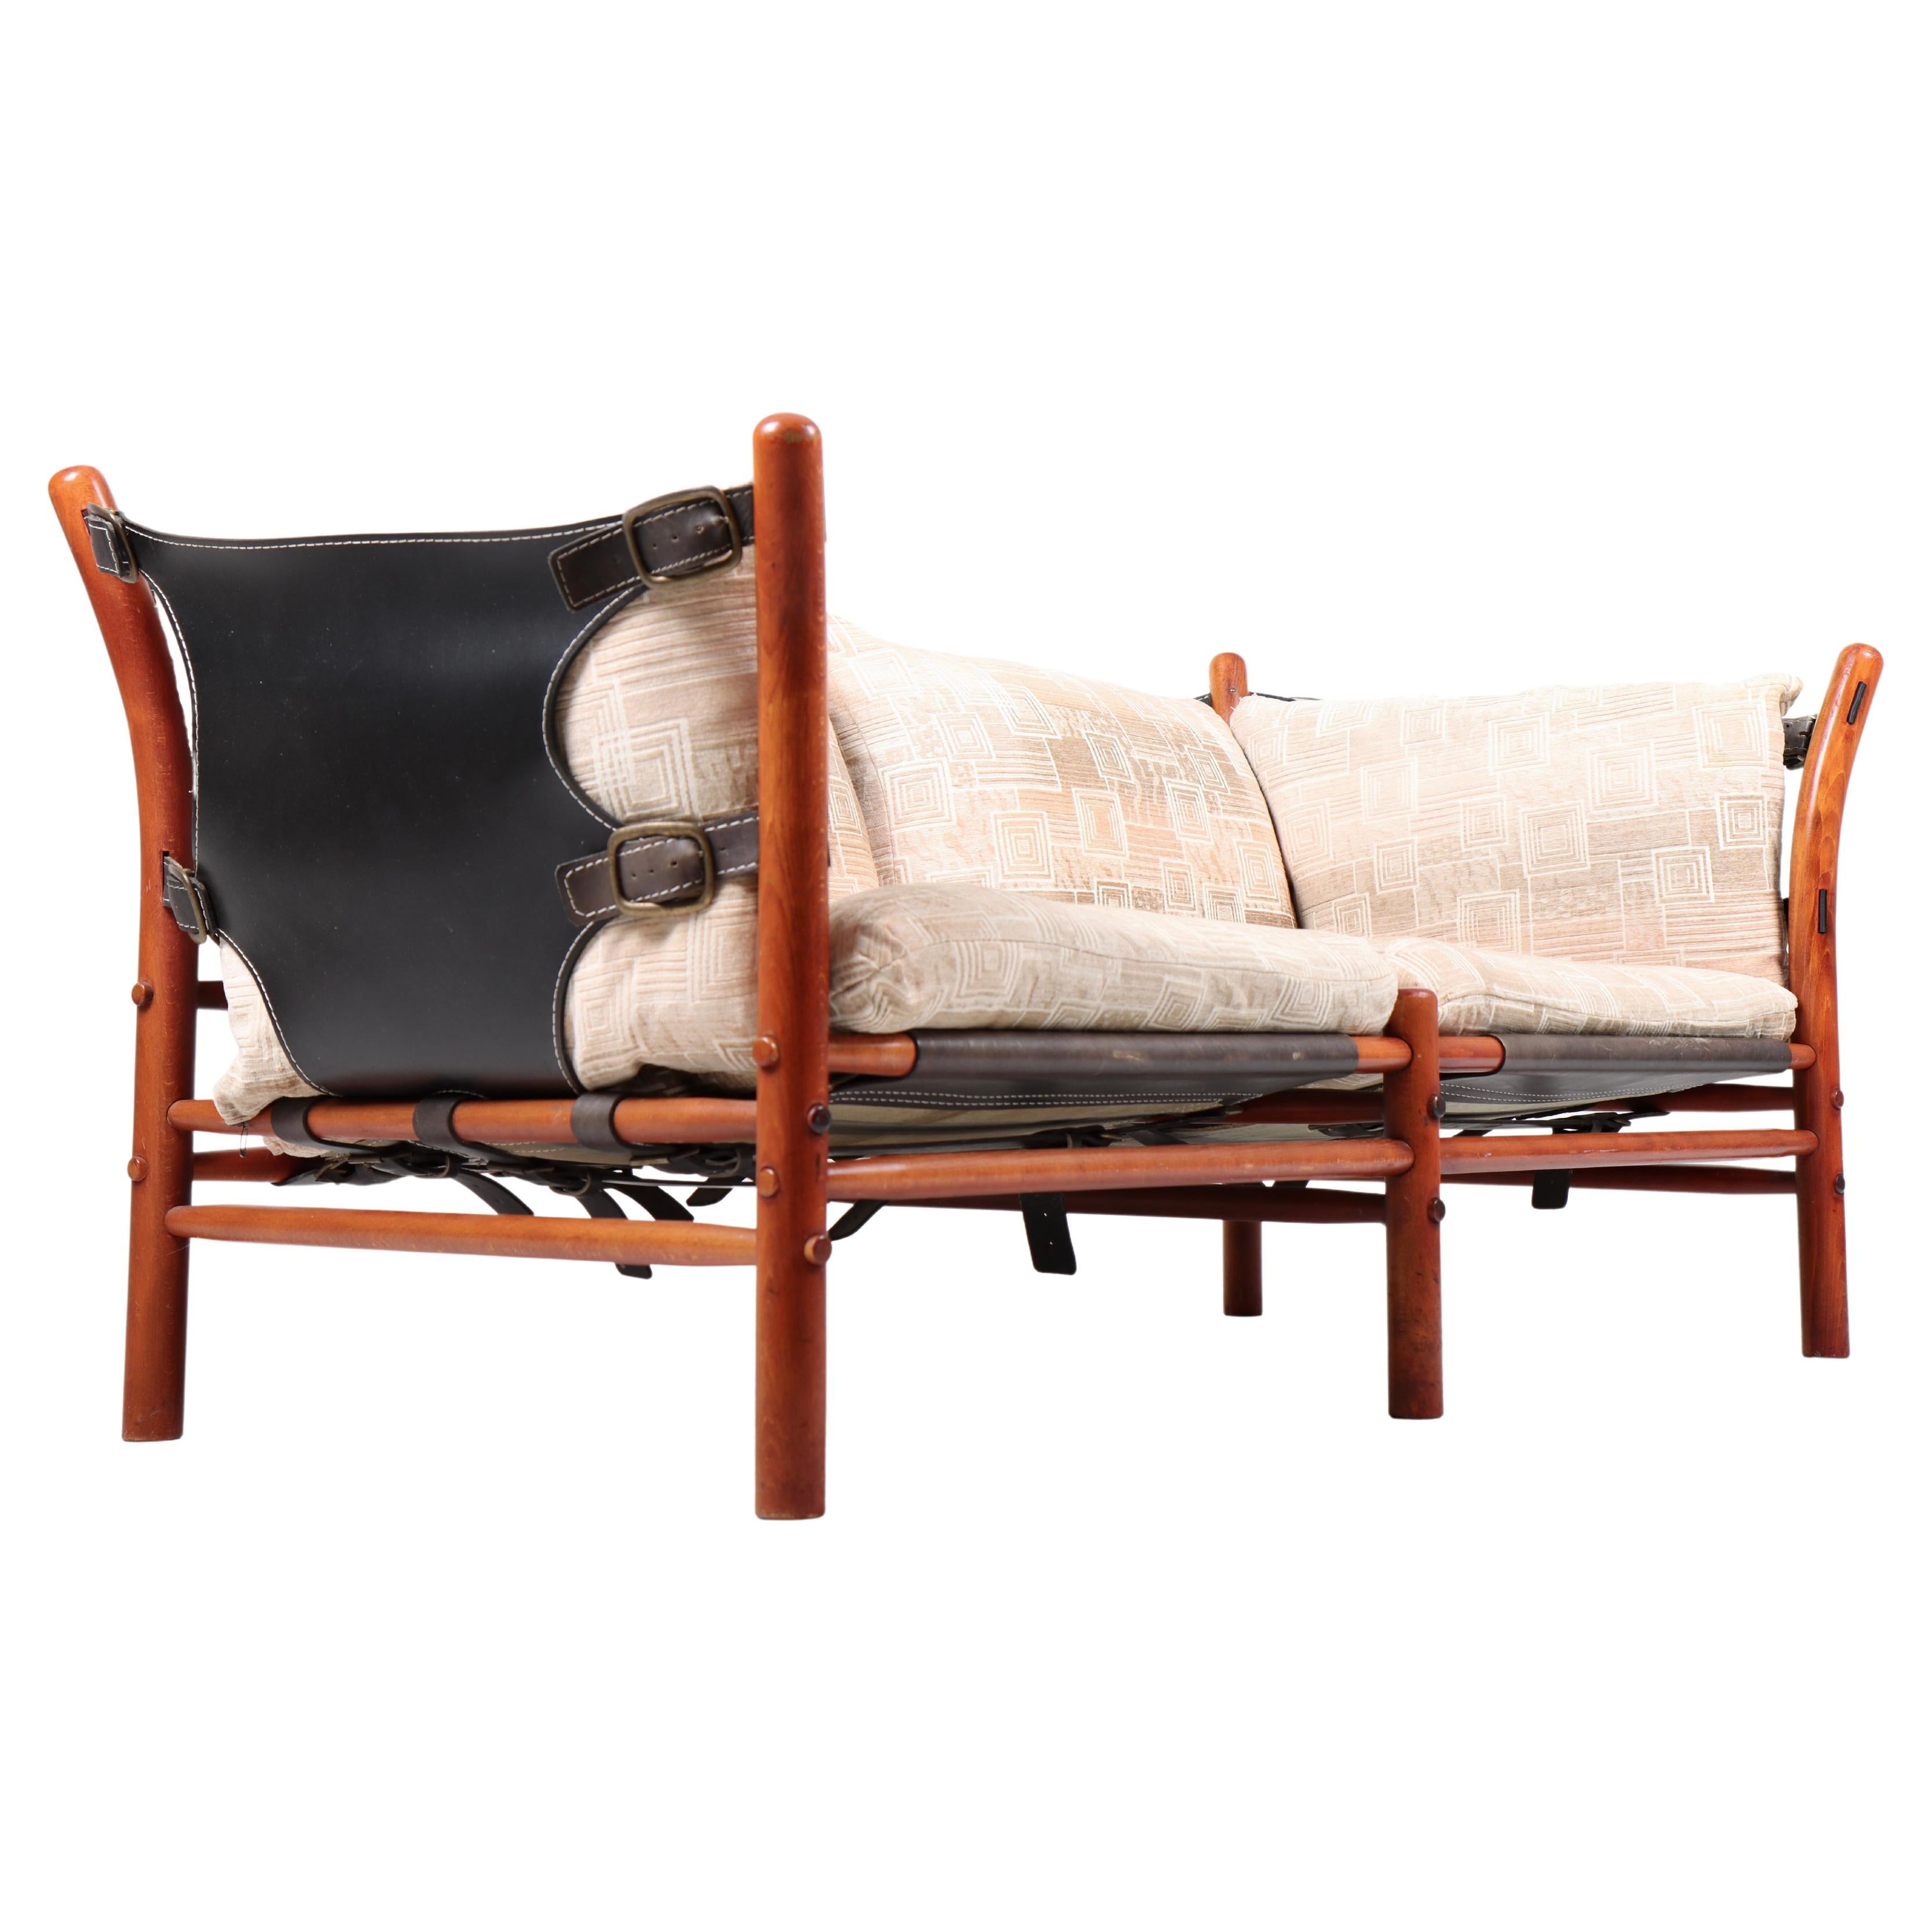 Canapé deux places avec coussins en tissu, cuir, cadre en bois et quincaillerie en laiton. Modèle Ilona conçu par l'architecte suédois Arne Norell pour Norell Möbel AB dans les années 1960. 

 